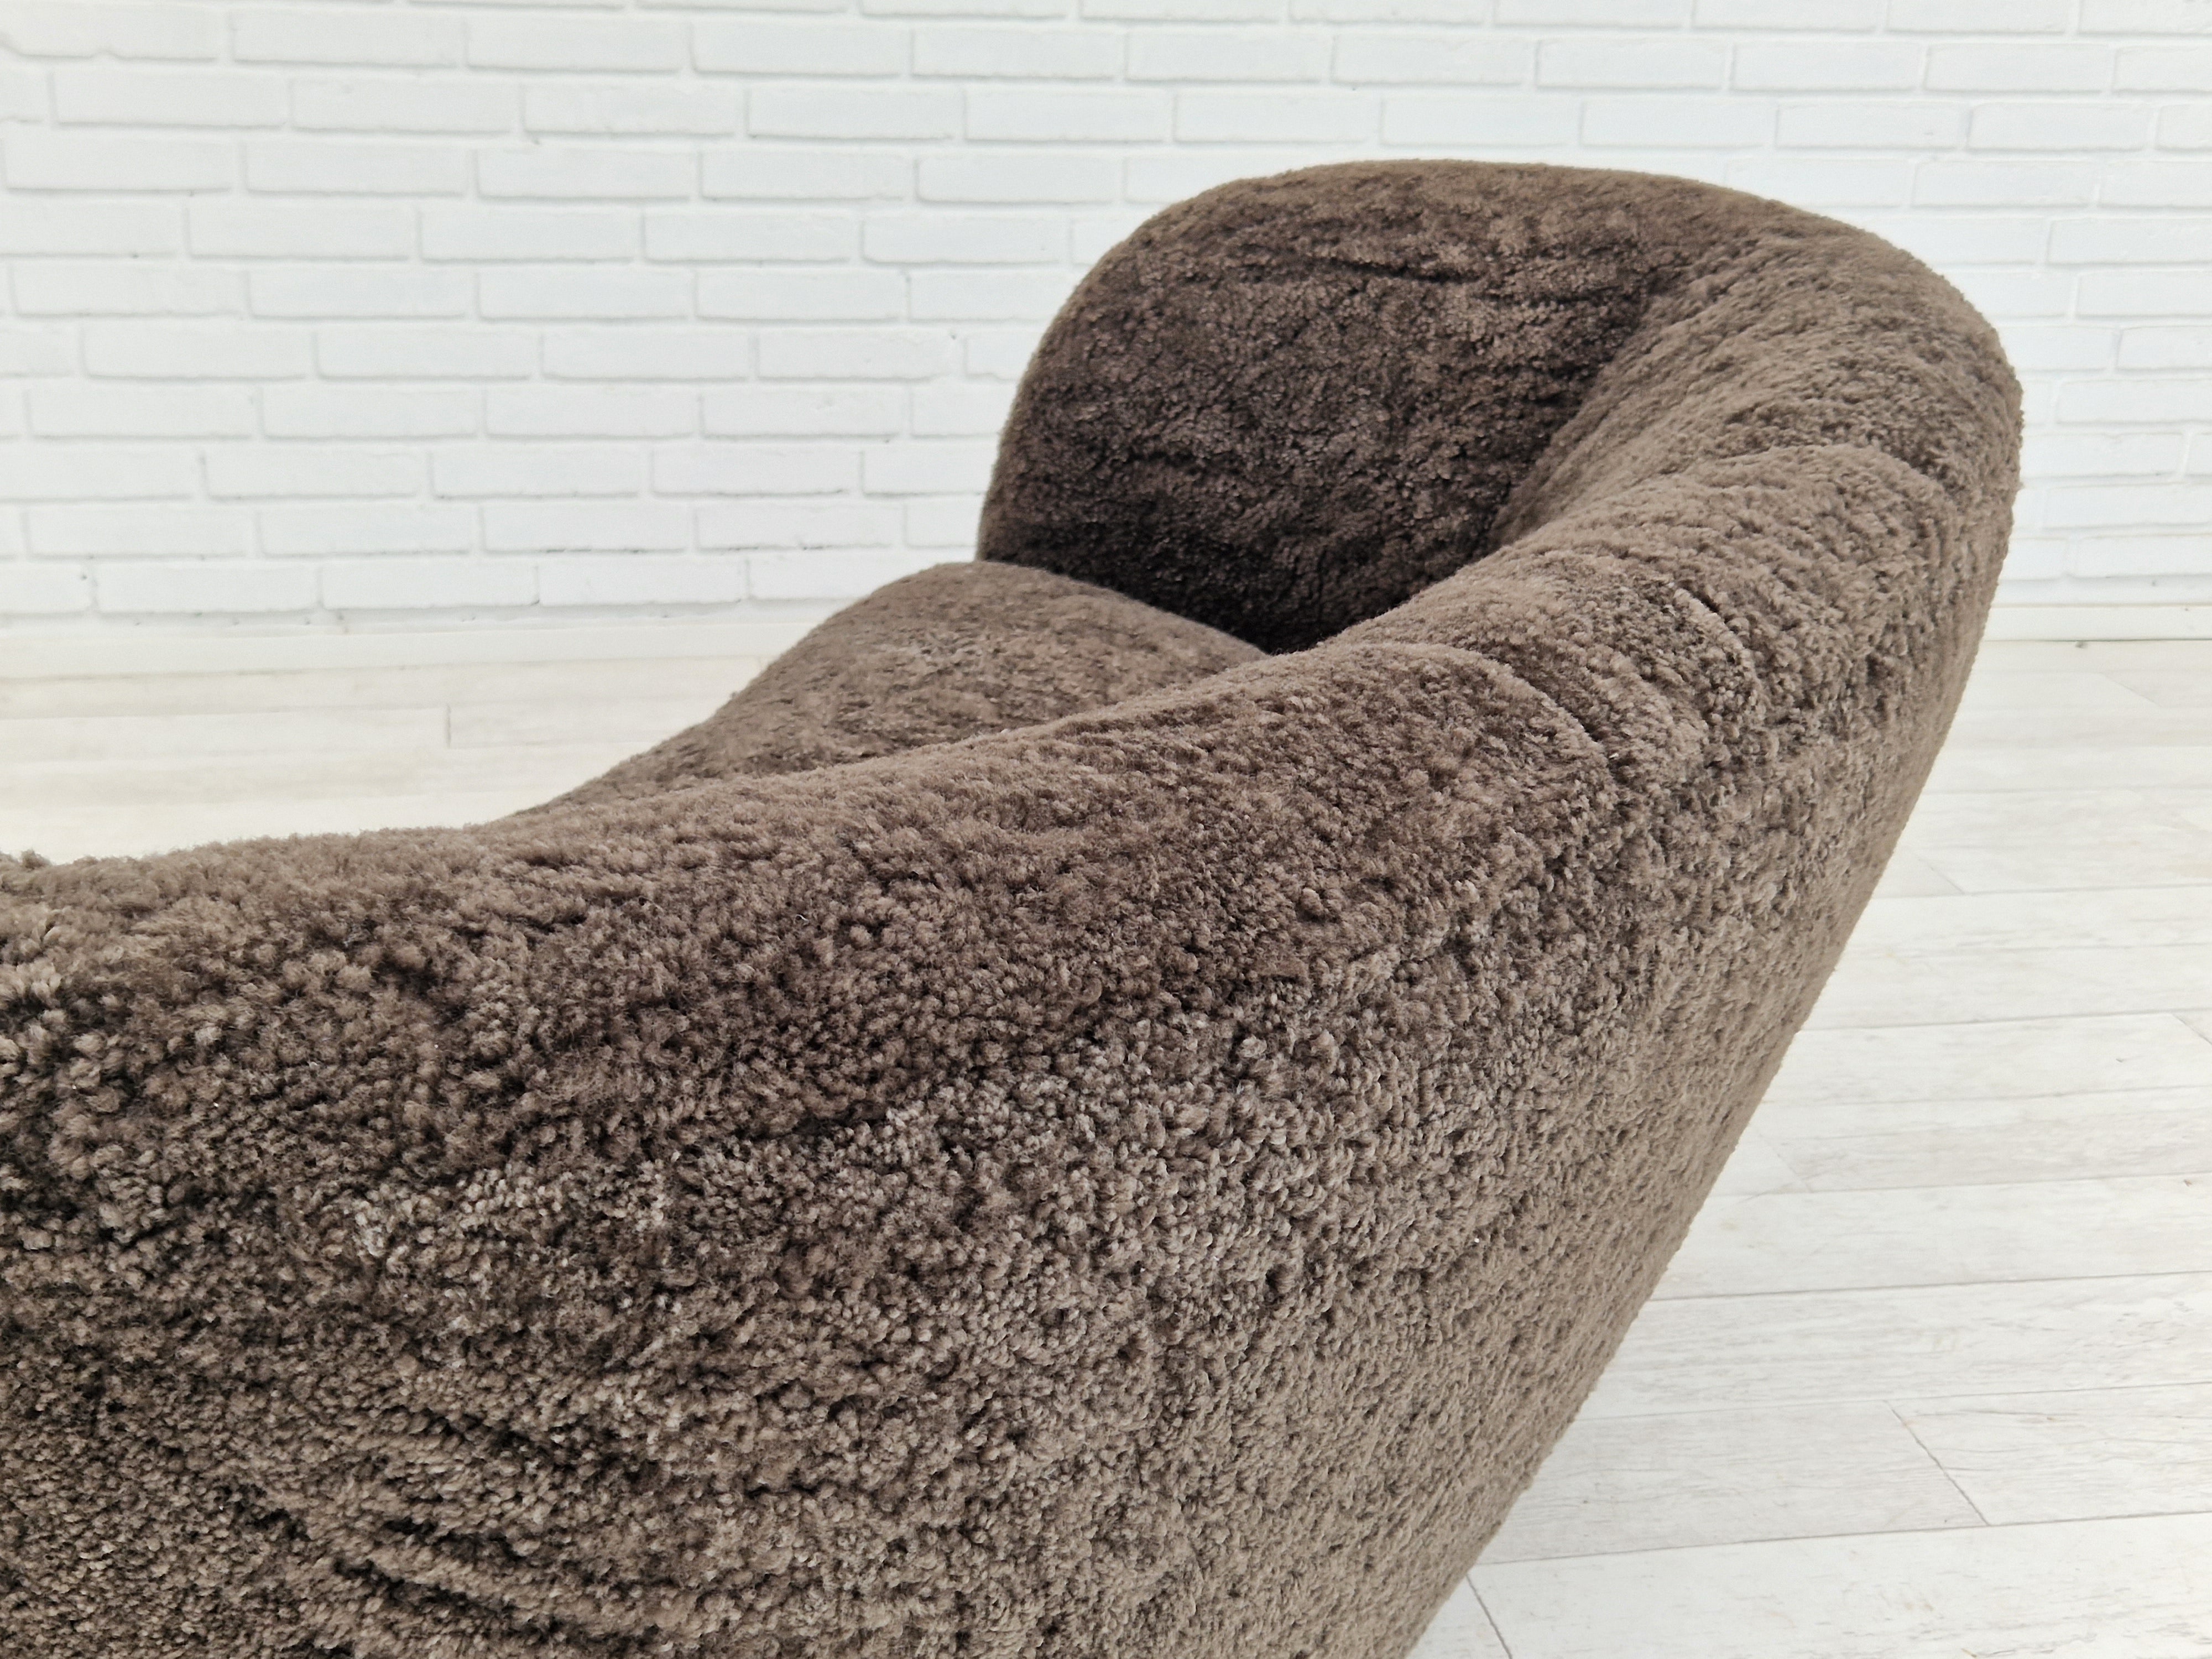 60erne, Dansk design, renoveret 2 pers. "Banana" sofa, ægte fåreskind.